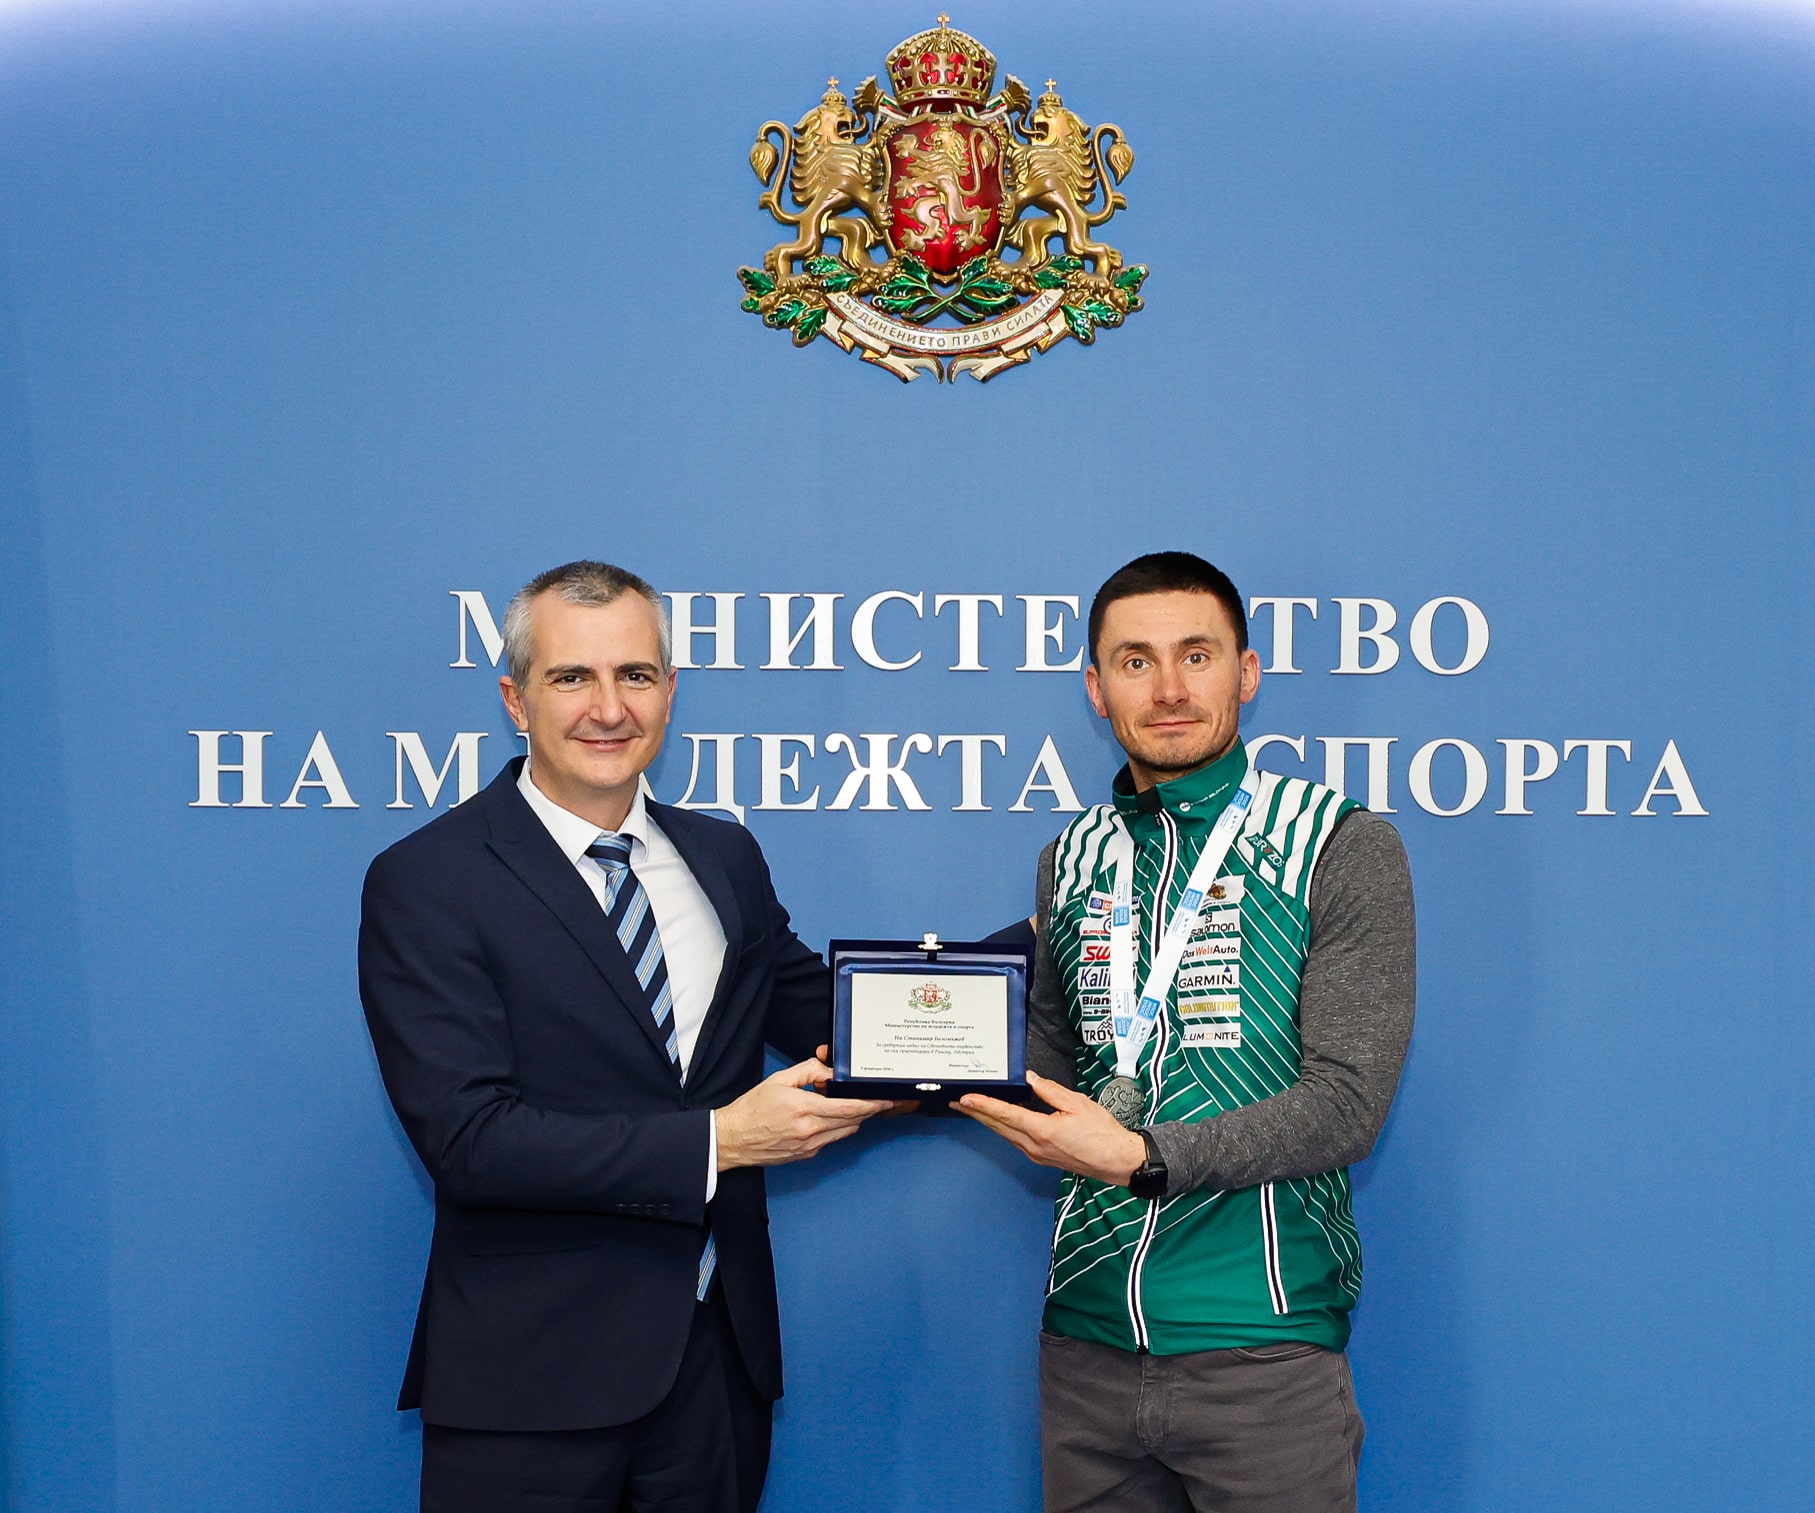 Министърът на младежта и спорта Димитър Илиев връчи почетен плакет